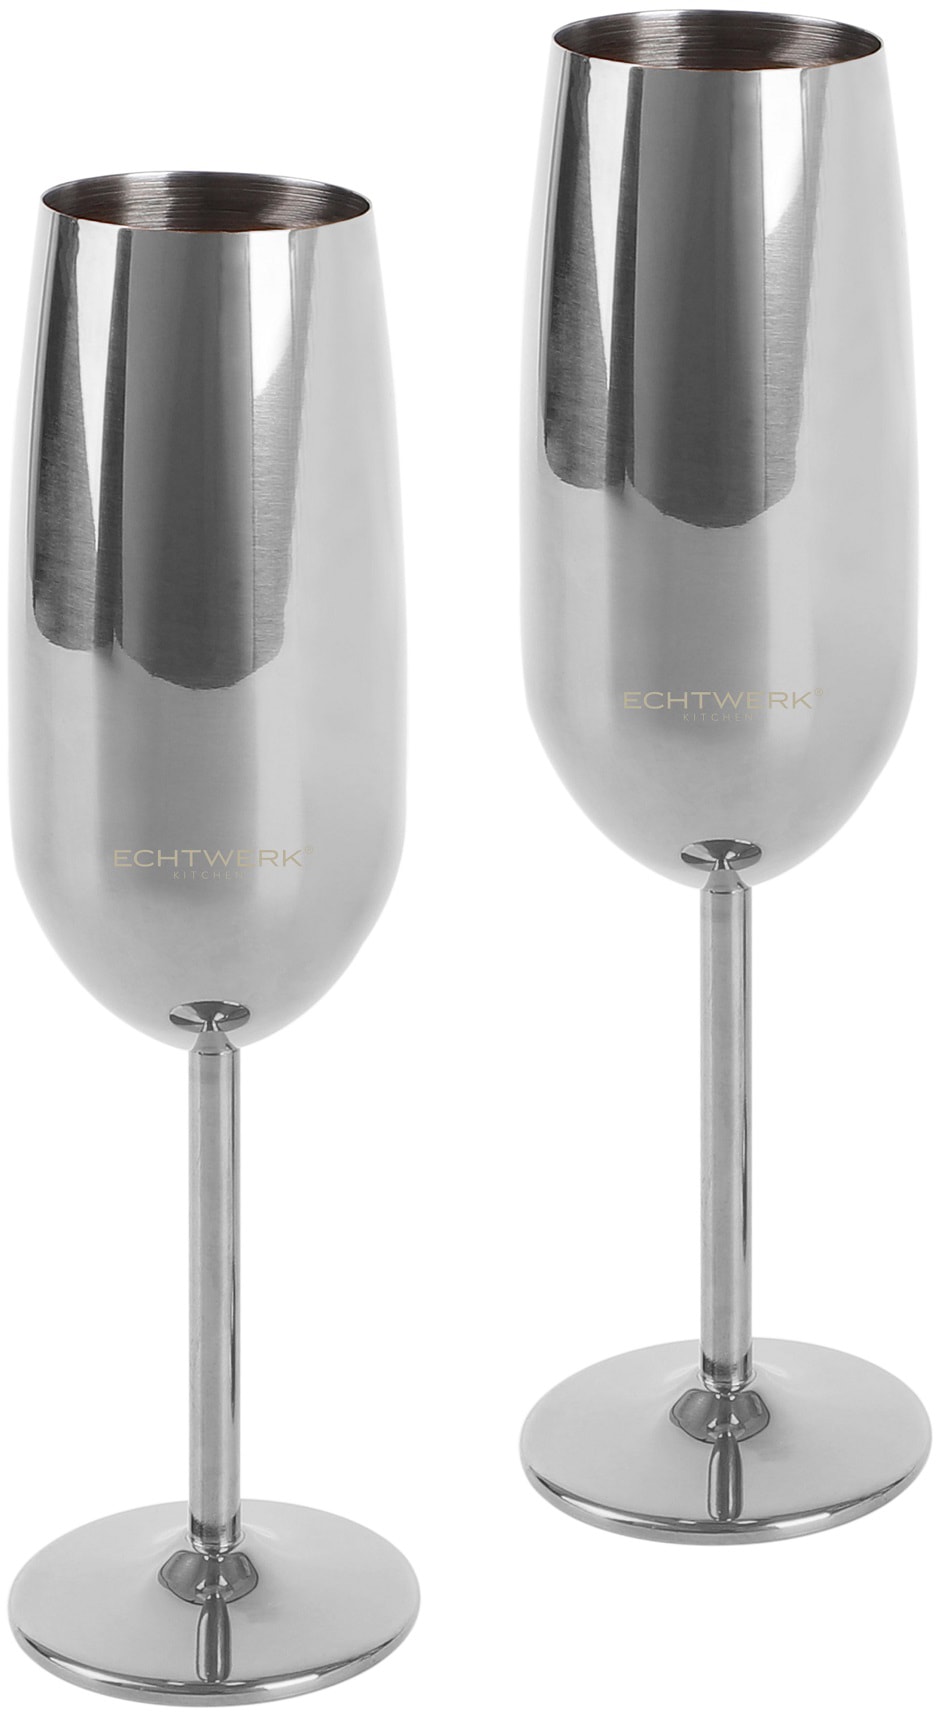 ECHTWERK Champagnerglas, (Set, 2 tlg.), Sektglas, Sektkelch, Champagnerkelch, bruchsicher, 250 ml